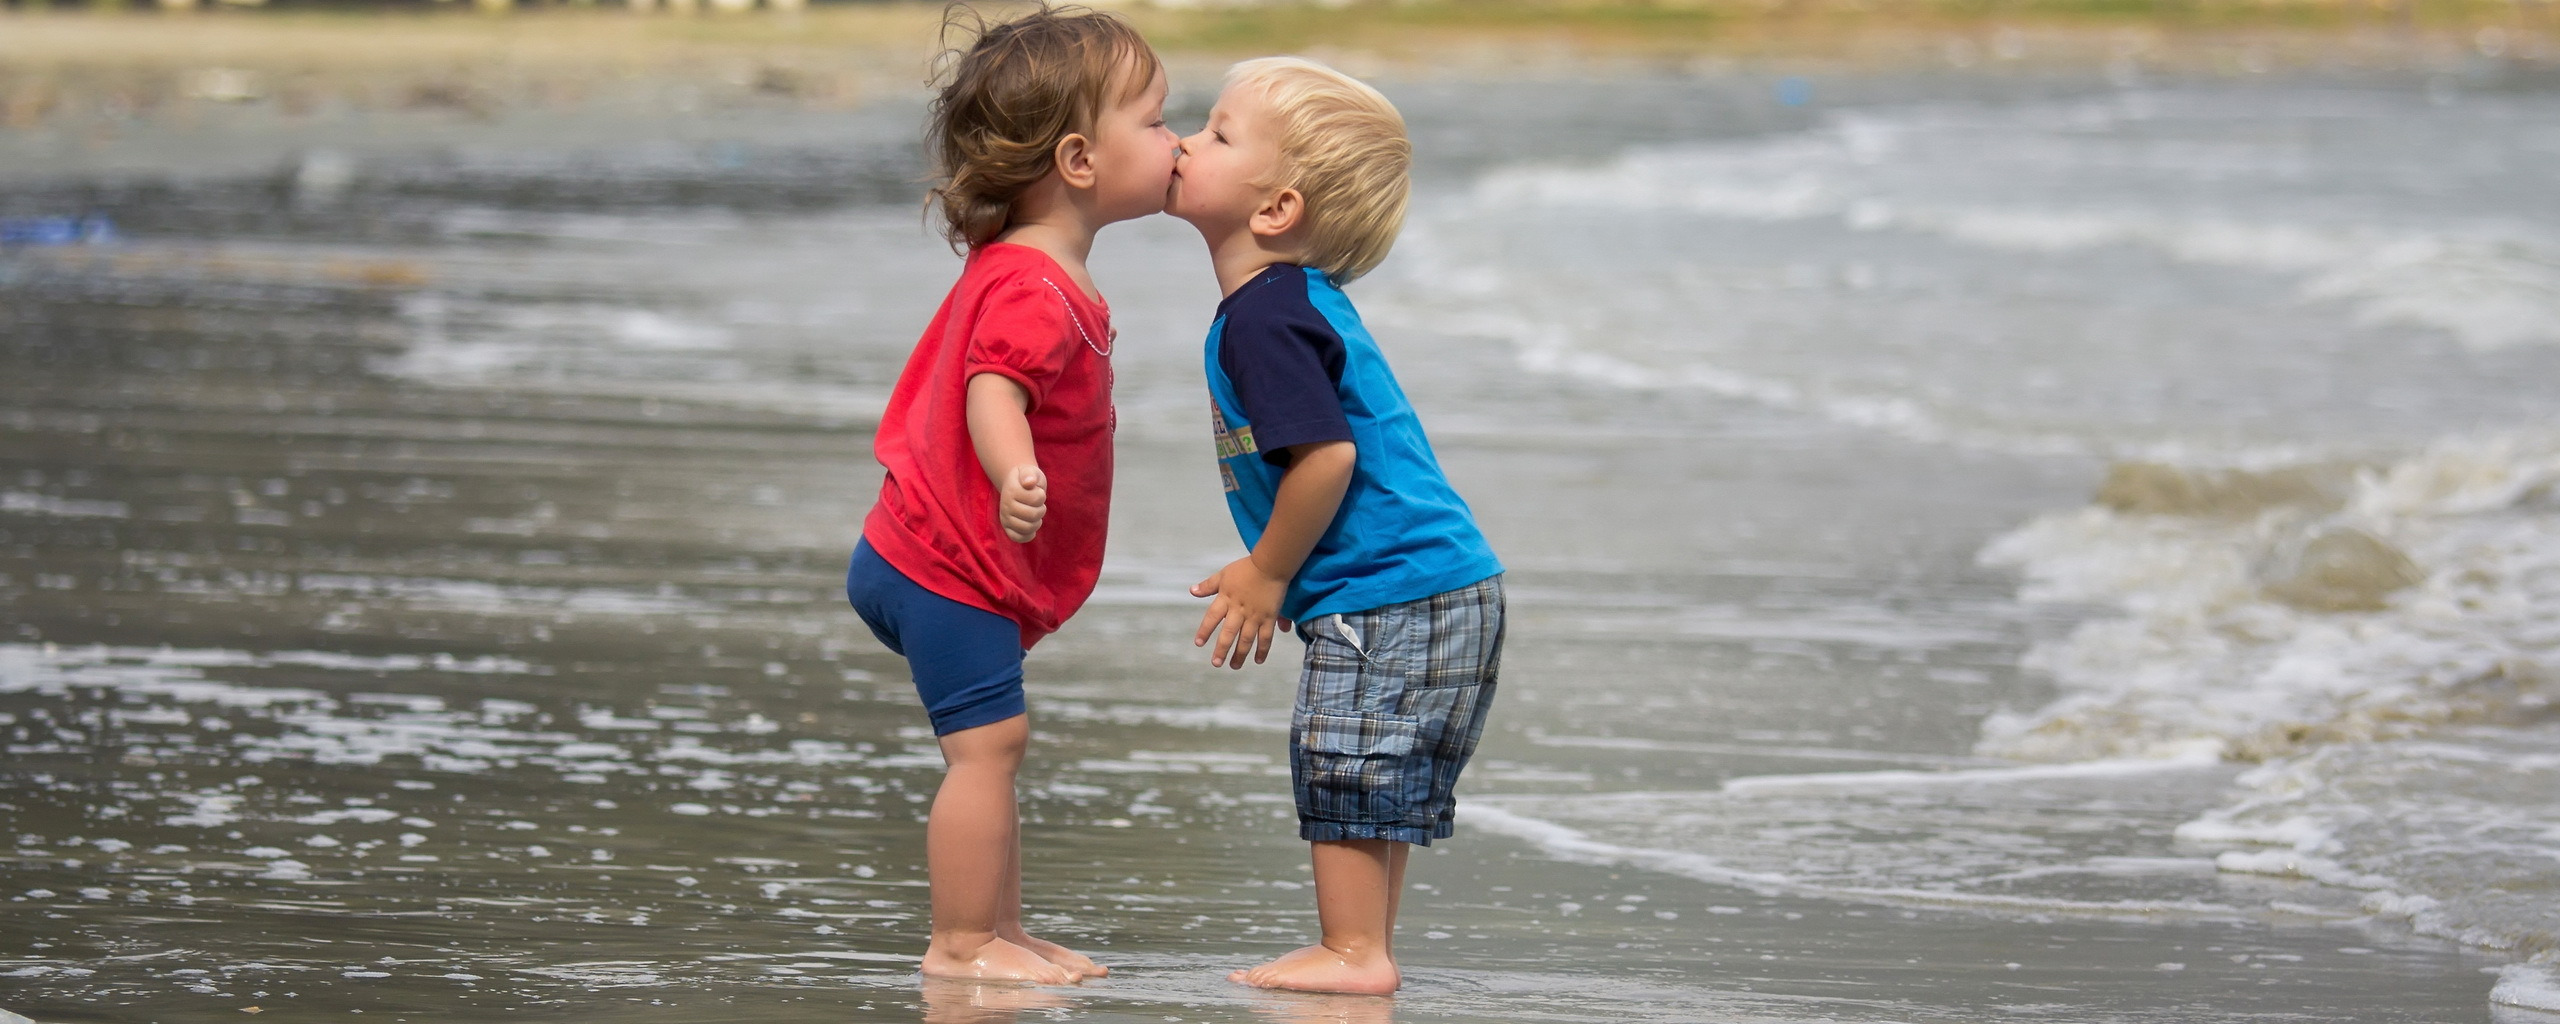 Большая девочка большой мальчик целуется. Любовь между детьми. Малыши целуются. Поцелуй картинка для детей. Детский поцелуй на пляже.